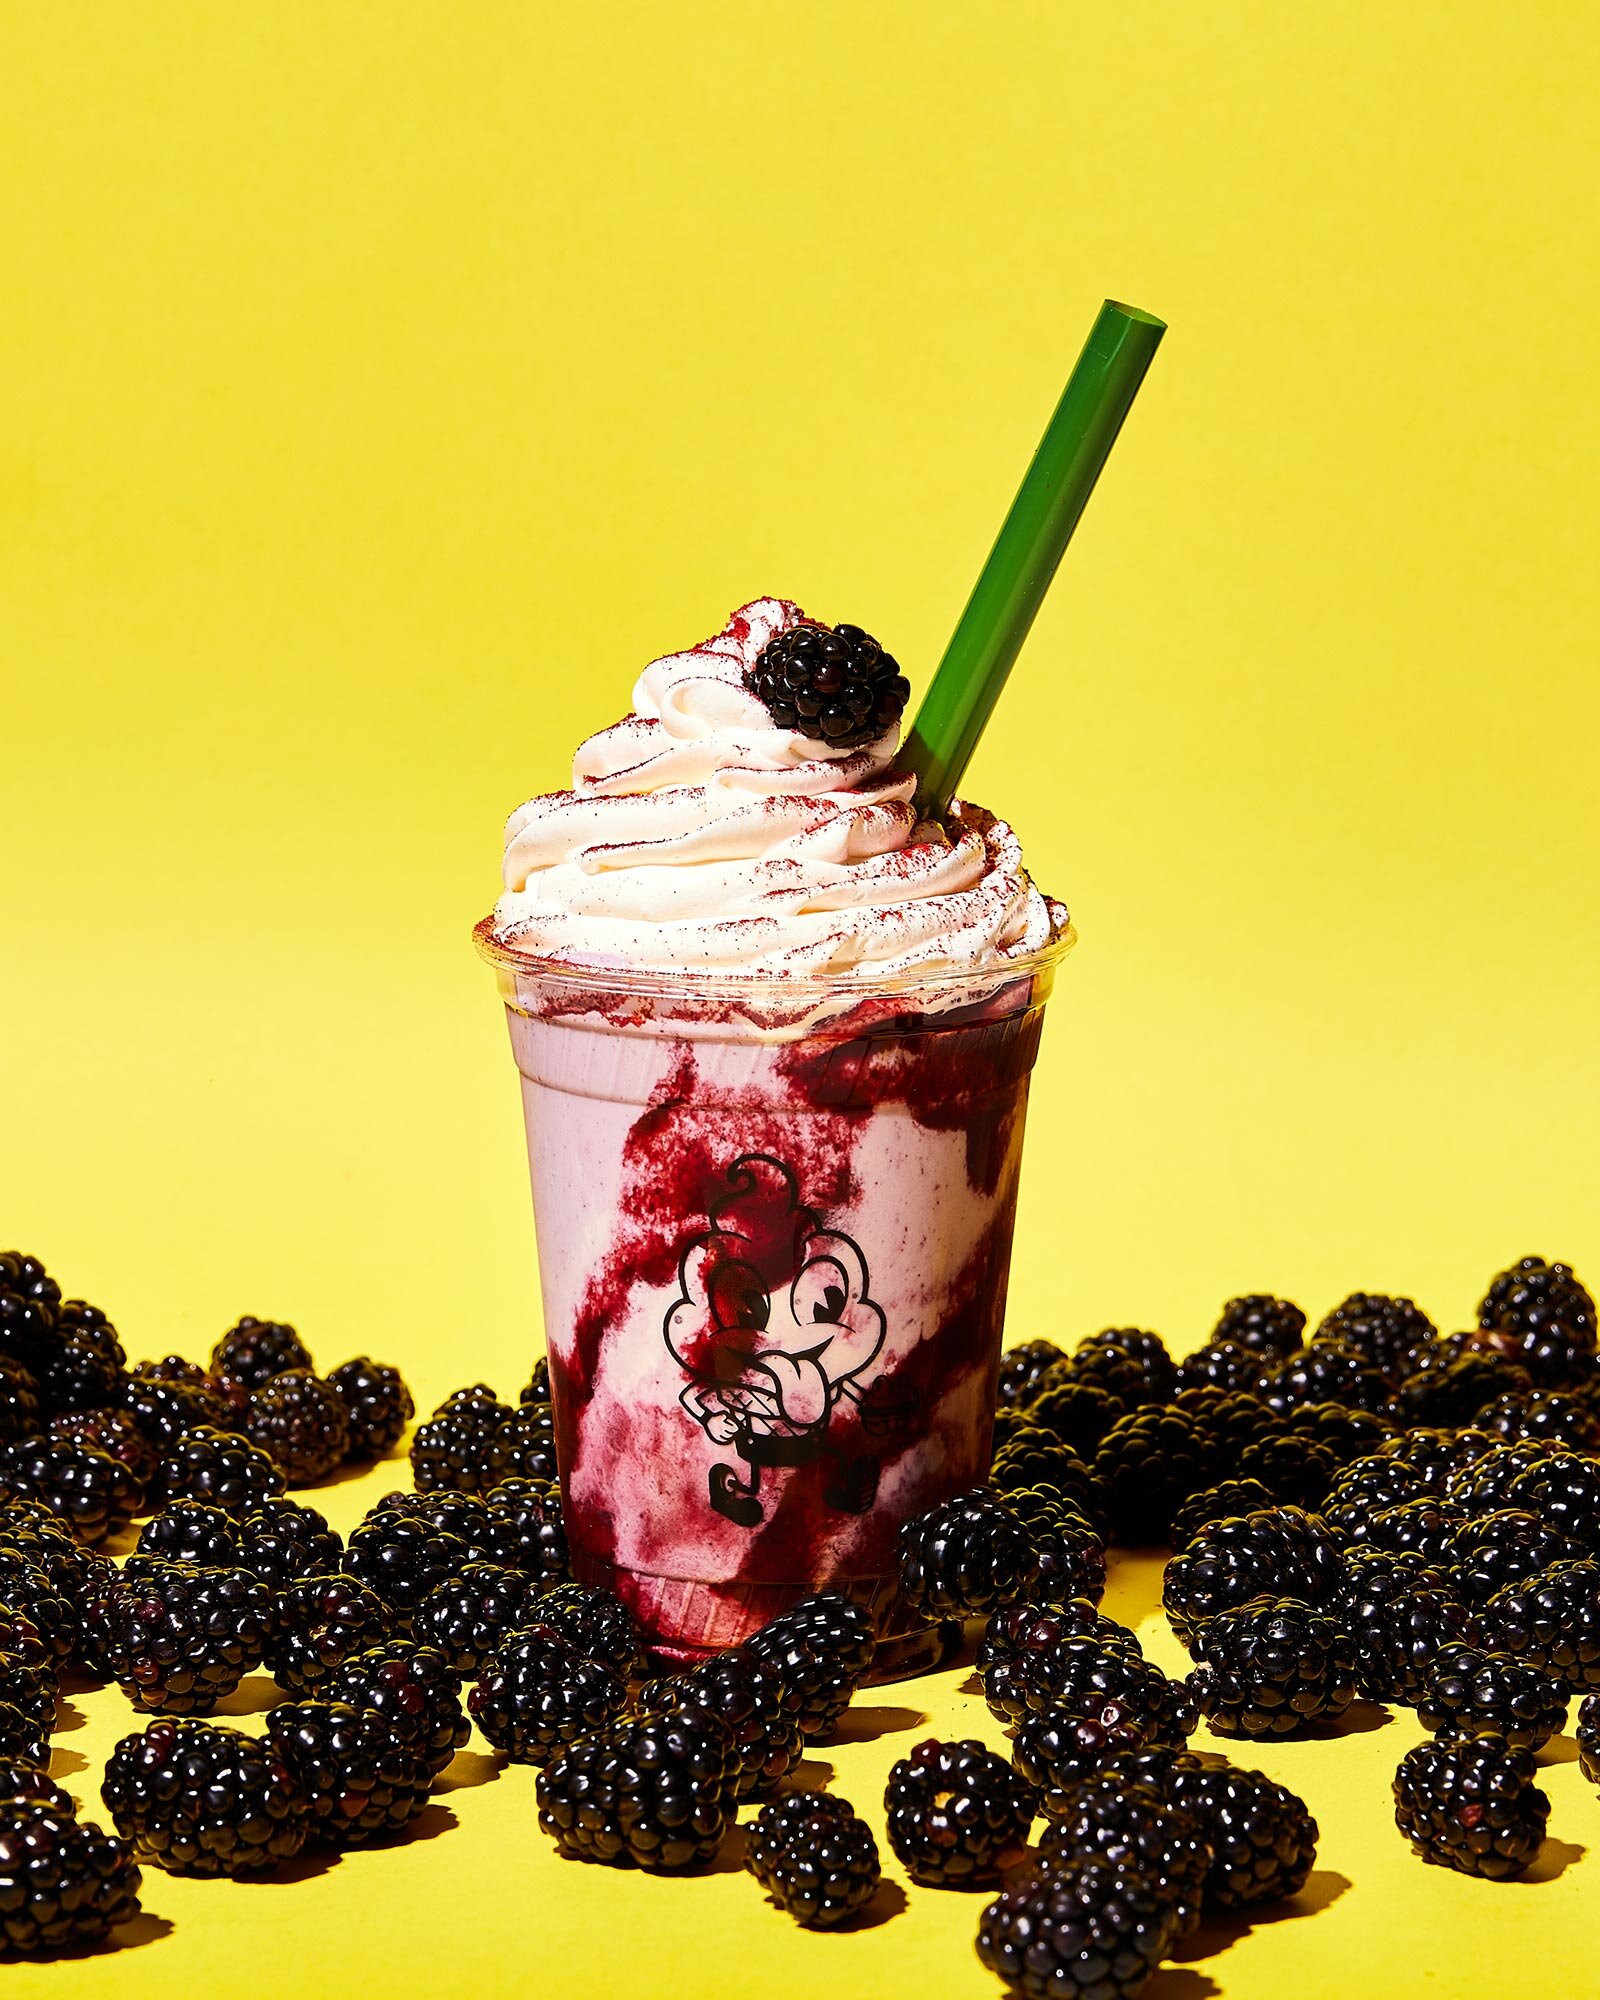 mister-dips-milkshake-blackberry-yellow-nyc-photographer.jpg